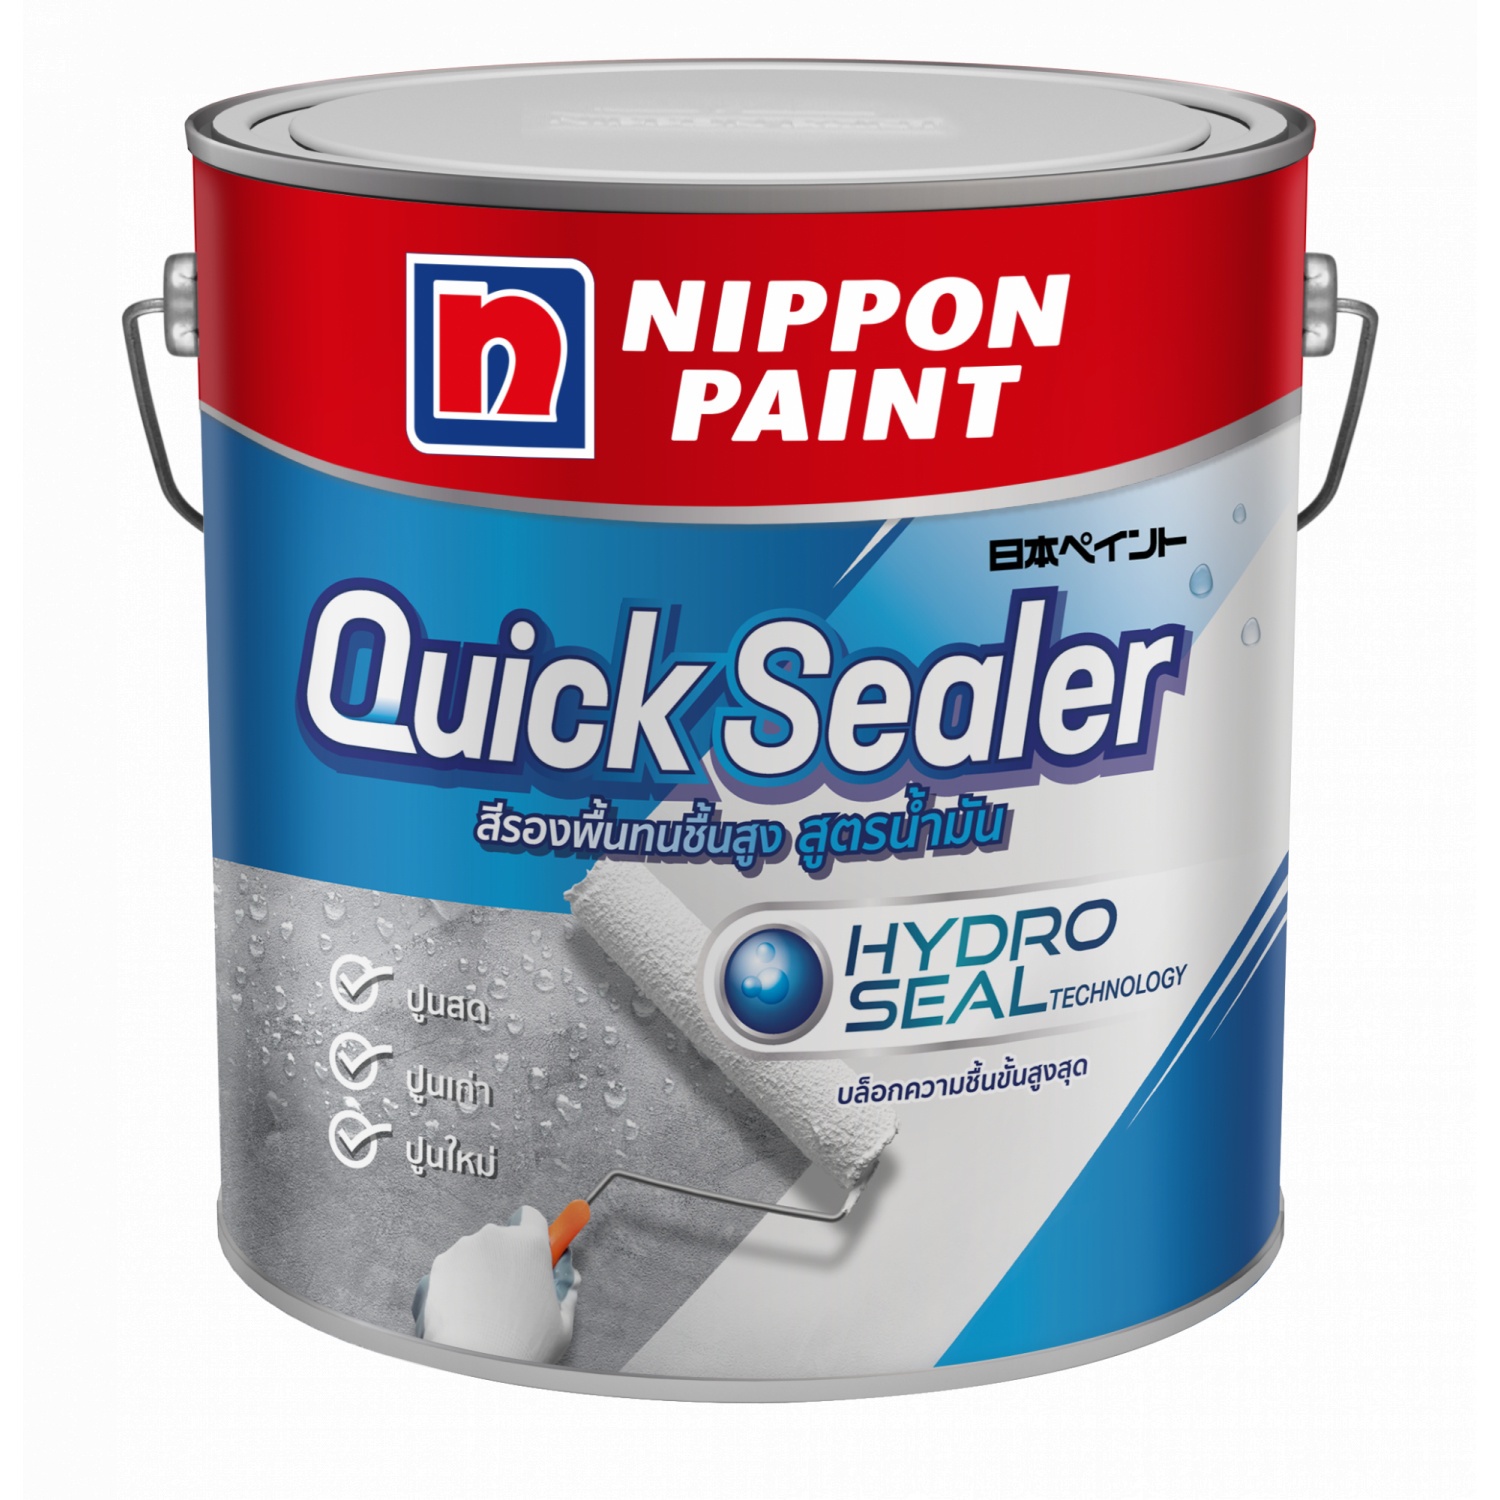 Nippon สีรองพื้นปูนใหม่ สูตรน้ำมัน ควิก ซิลเลอร์  1 กล สีขาว